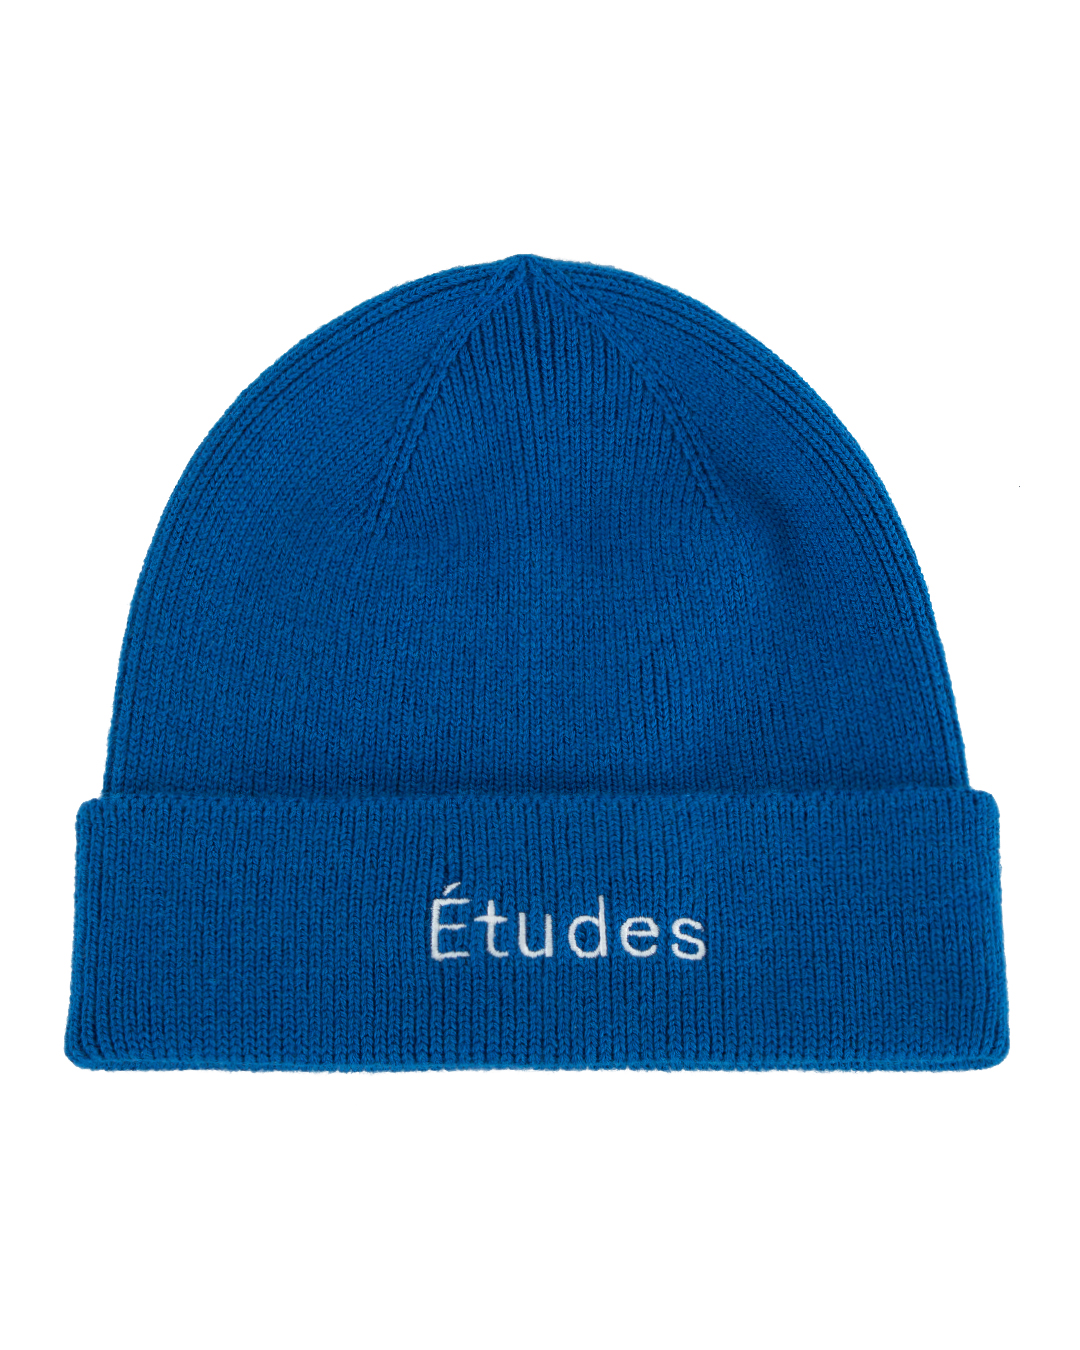 Études и вышивкой логотипа бренда  артикул  марки Études купить за 13200 руб.